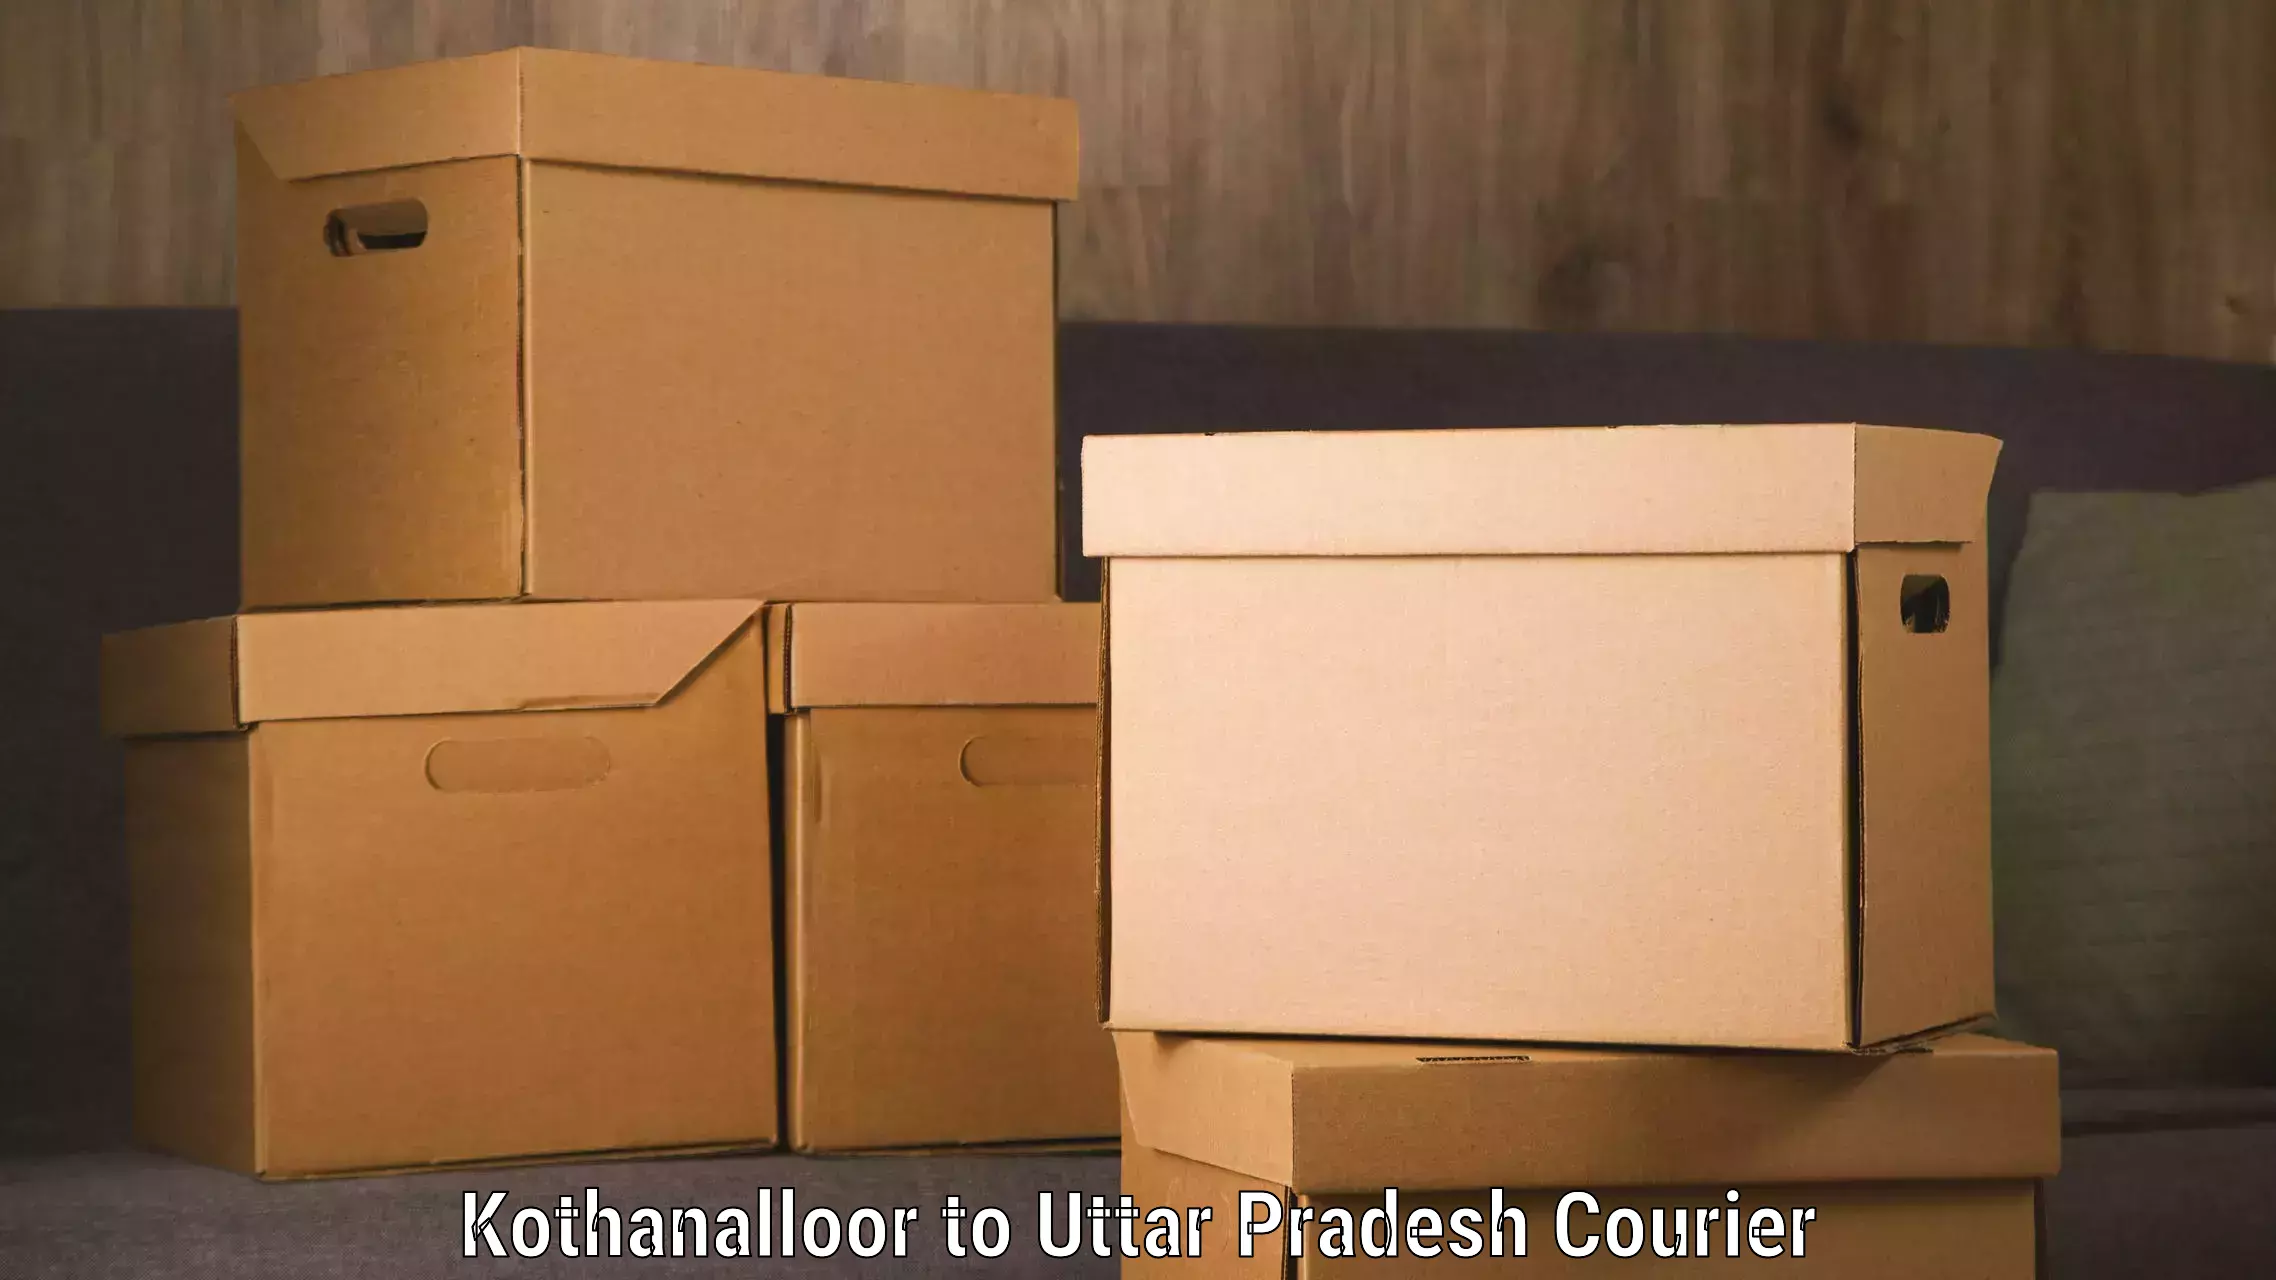 Flexible delivery scheduling Kothanalloor to Kulpahar